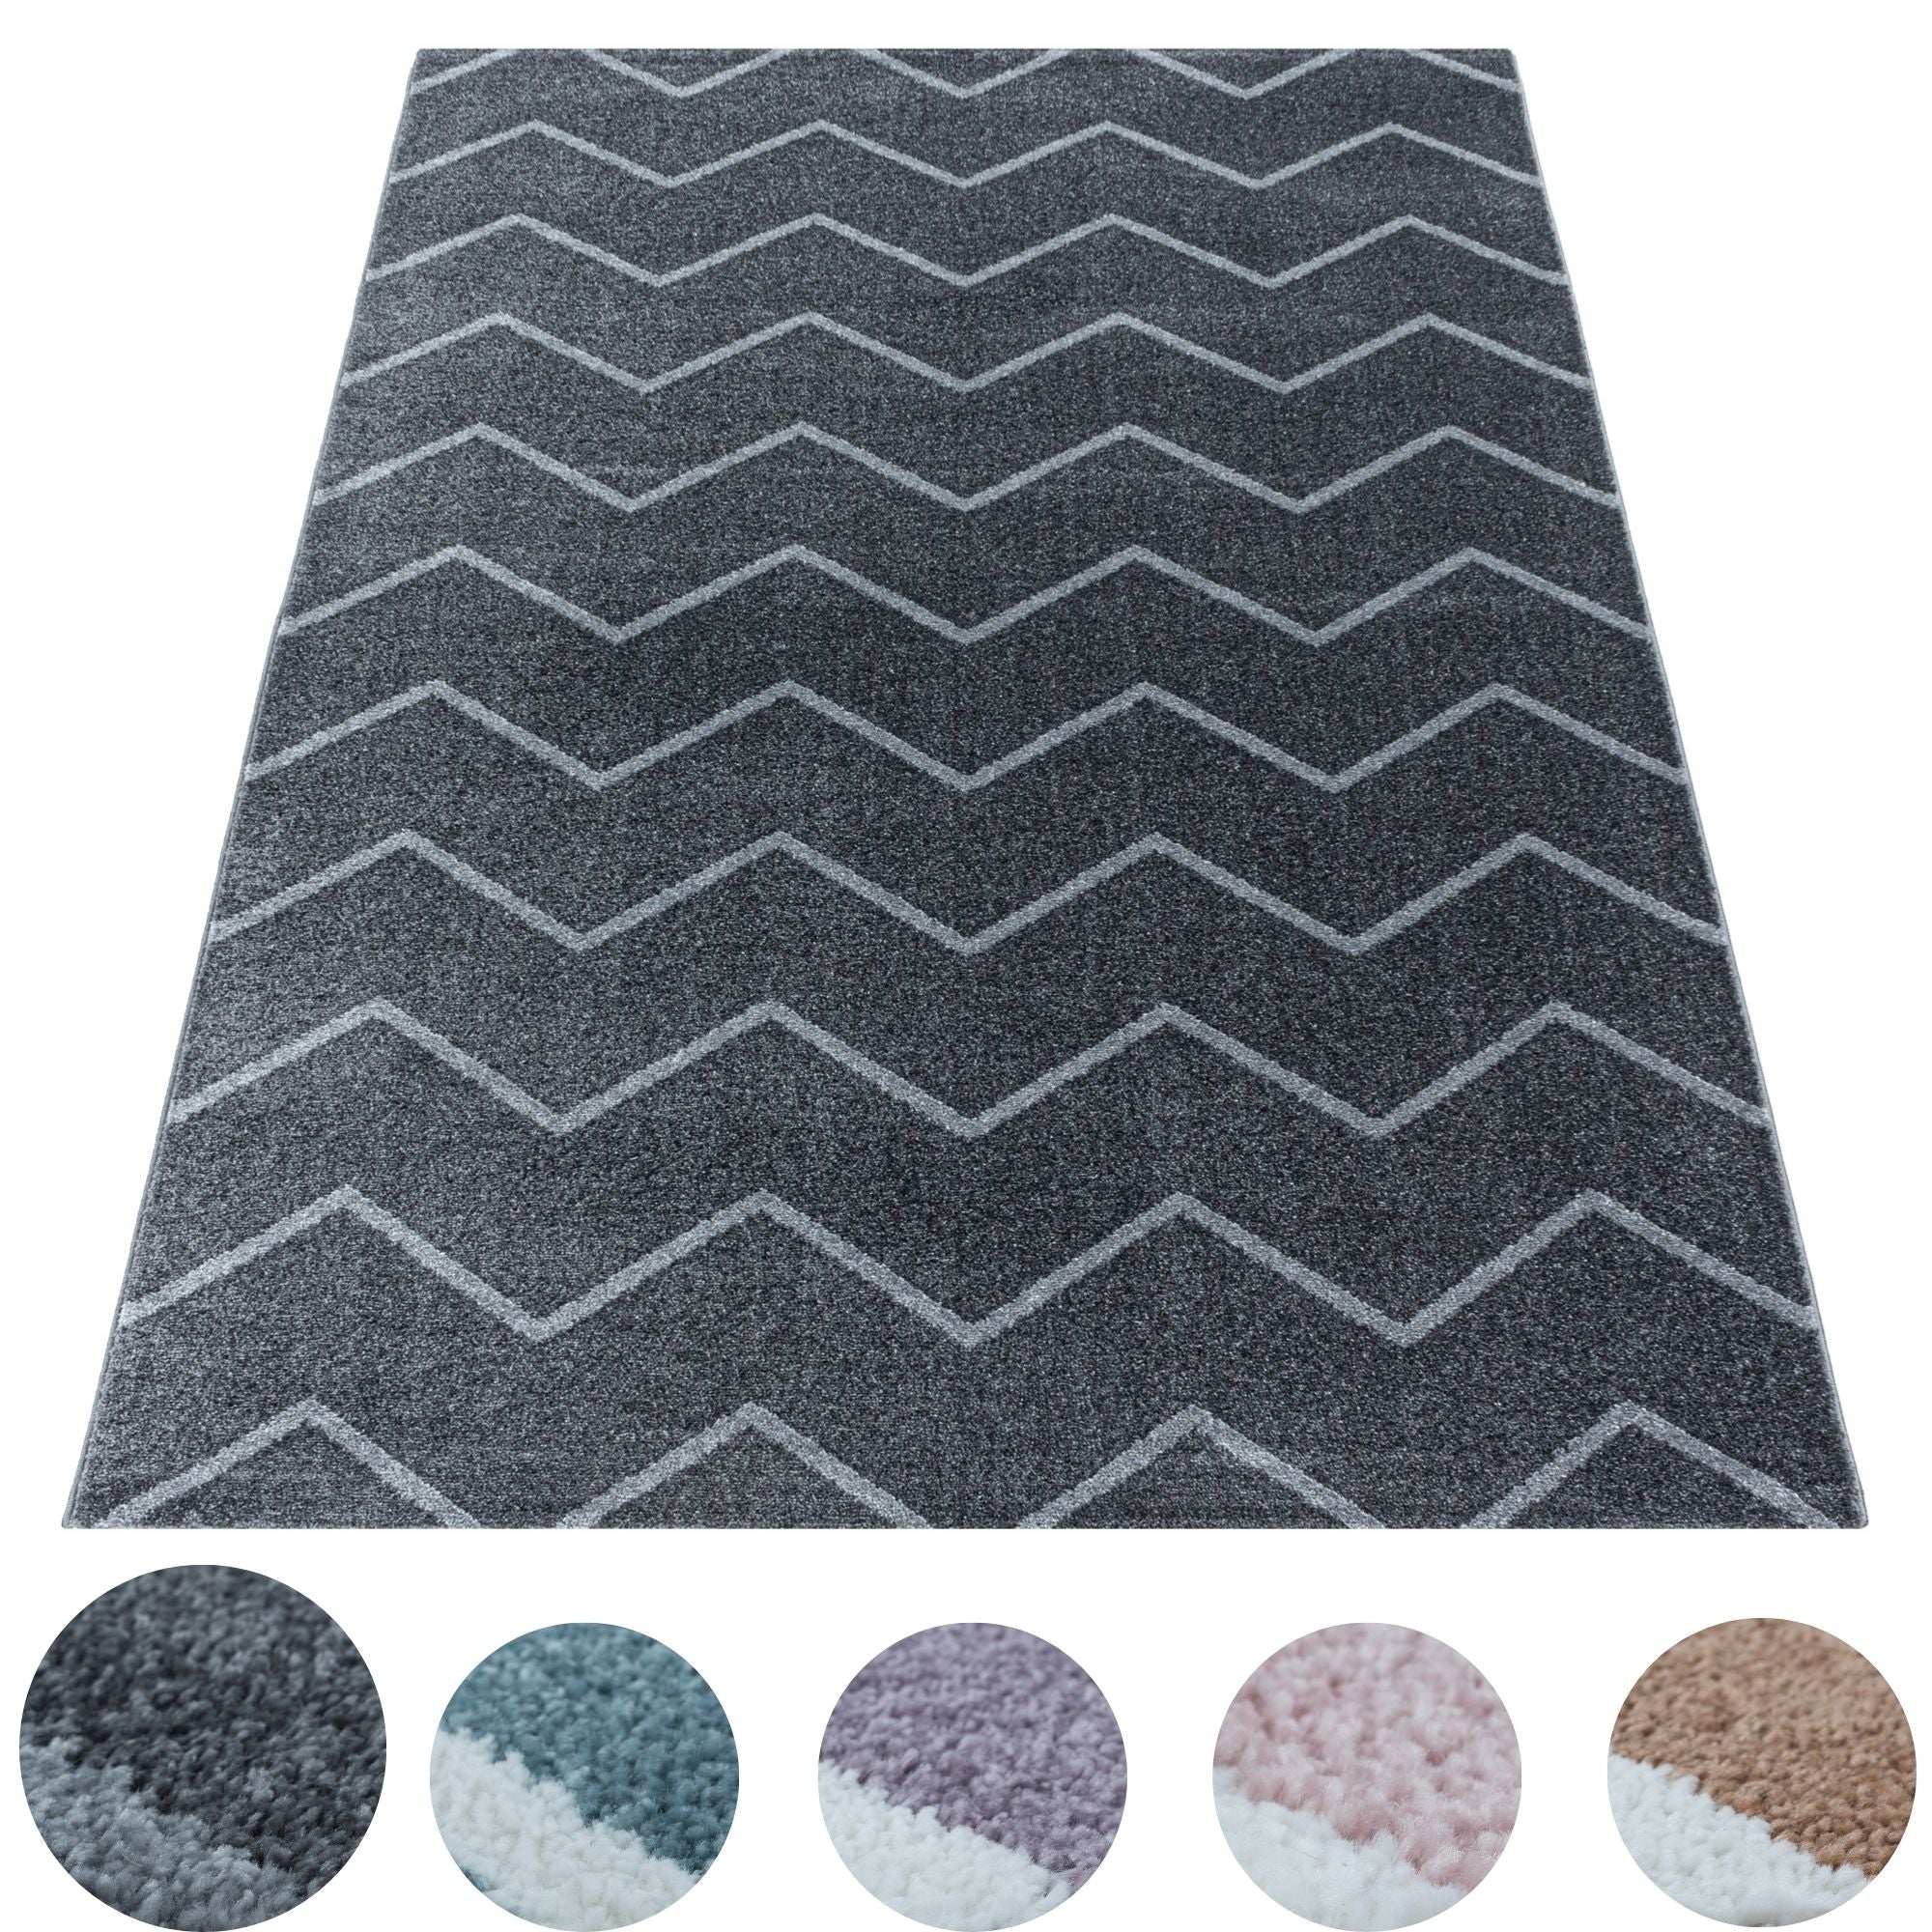 Kurzflor Teppich Grau Wellen Linien Design Wohnzimmerteppich Kinderteppich